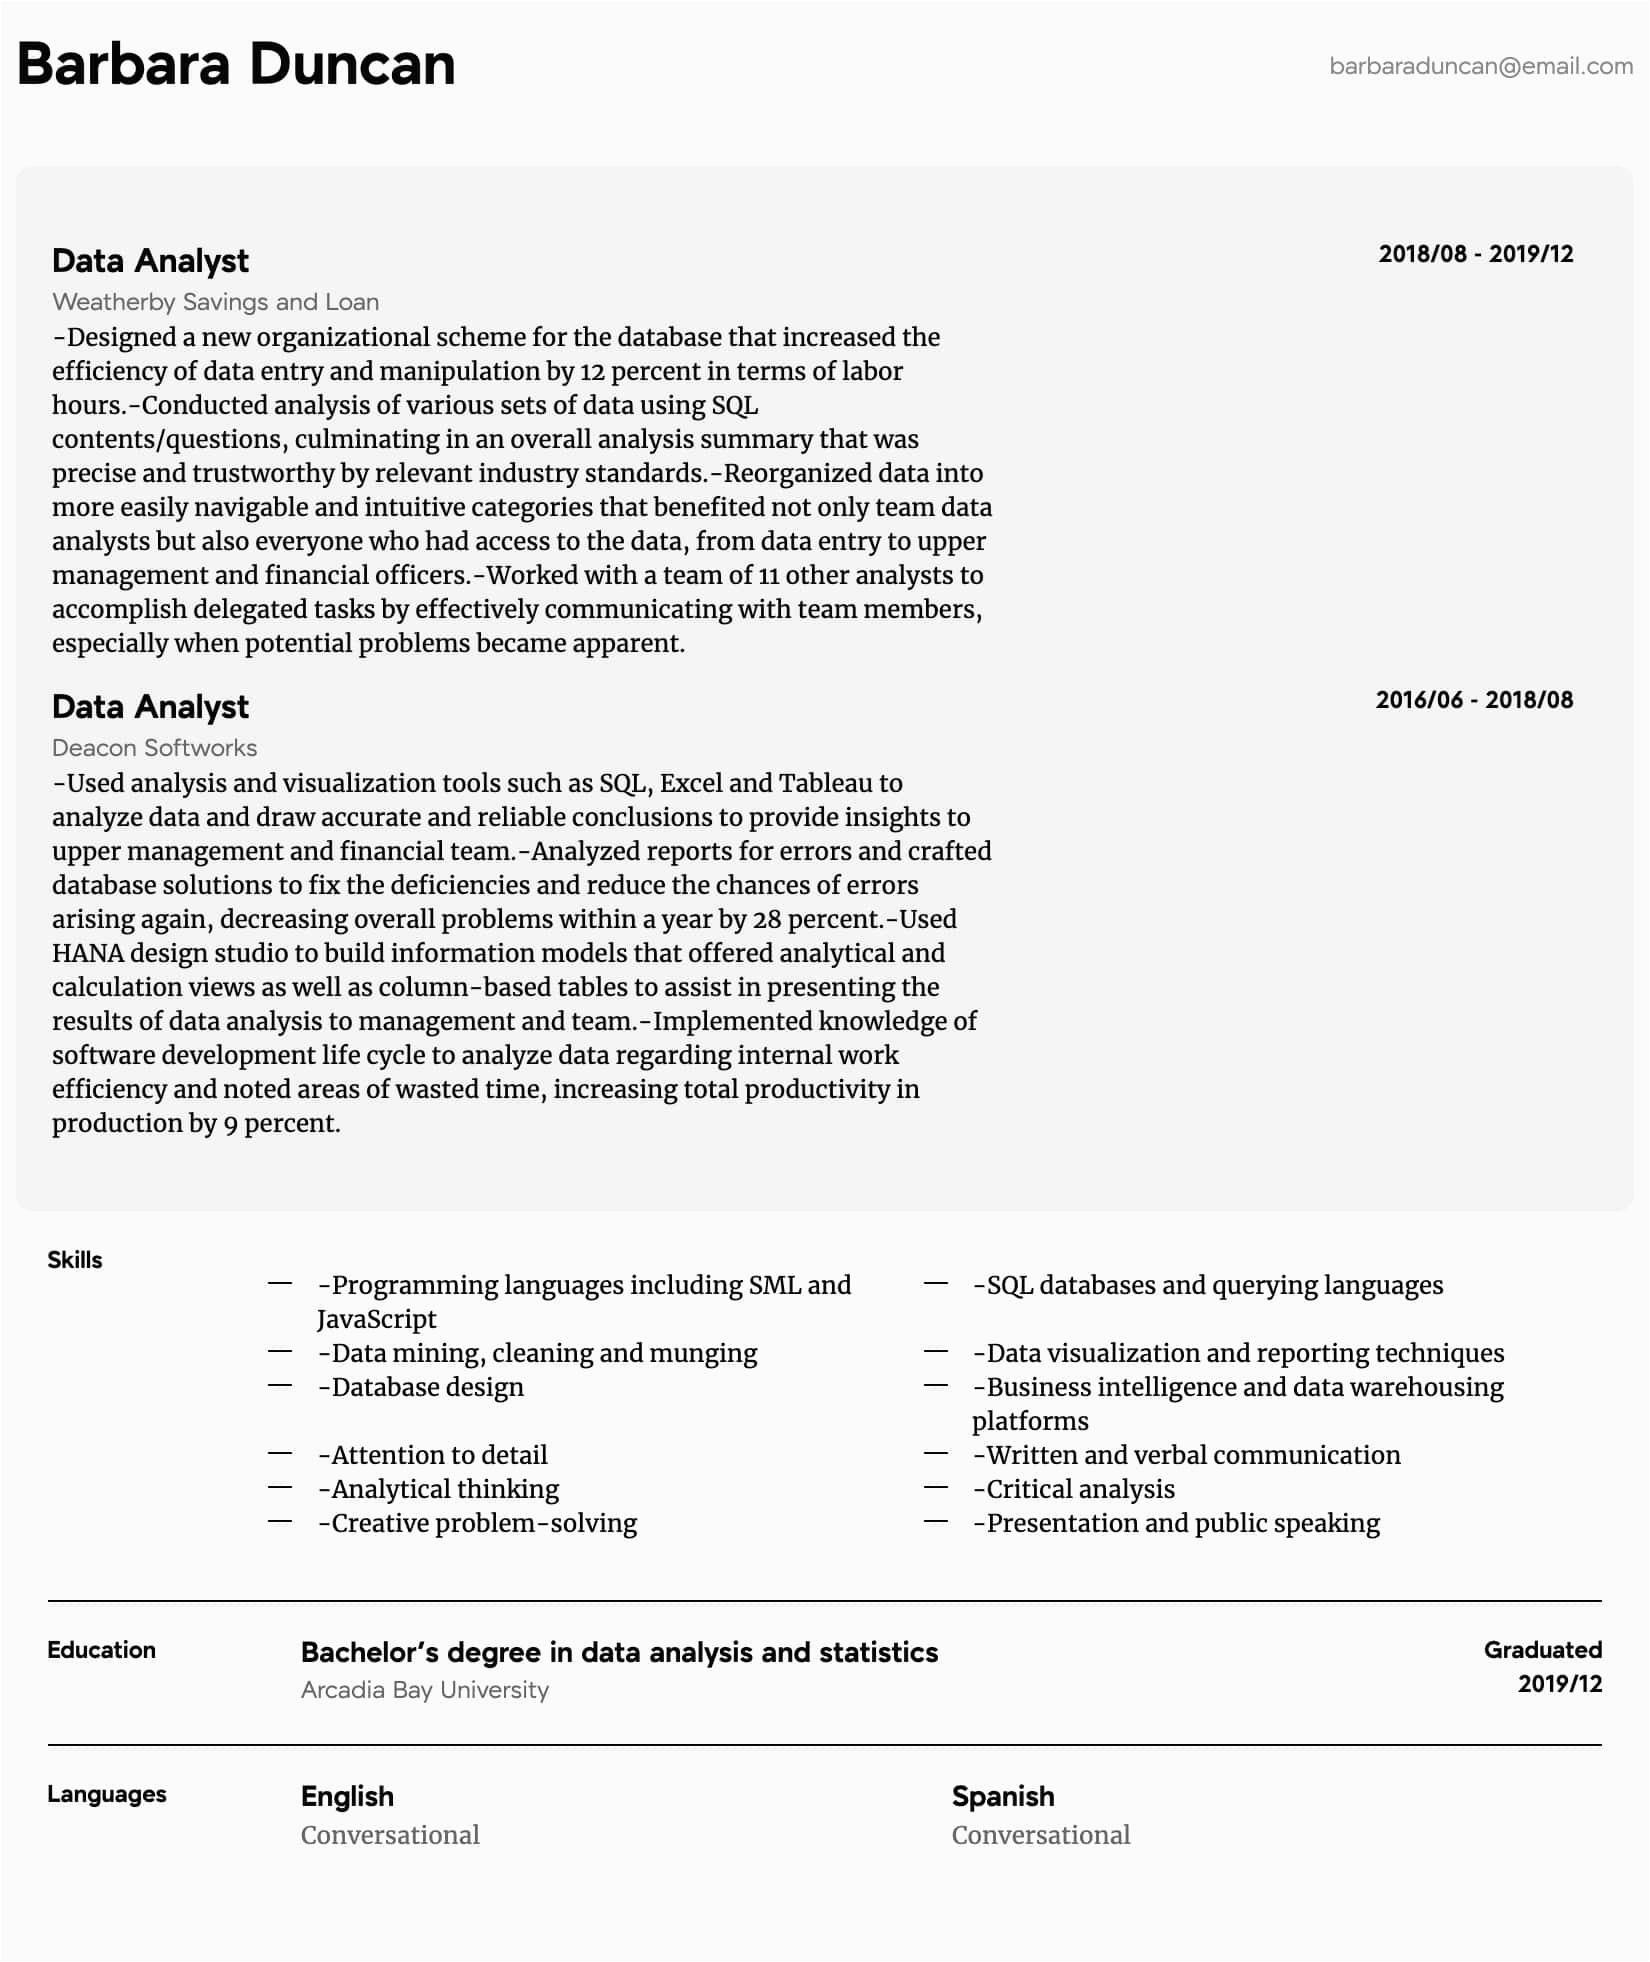 Sample Resume Entry Level Data Analyst Data Analyst Resume Samples